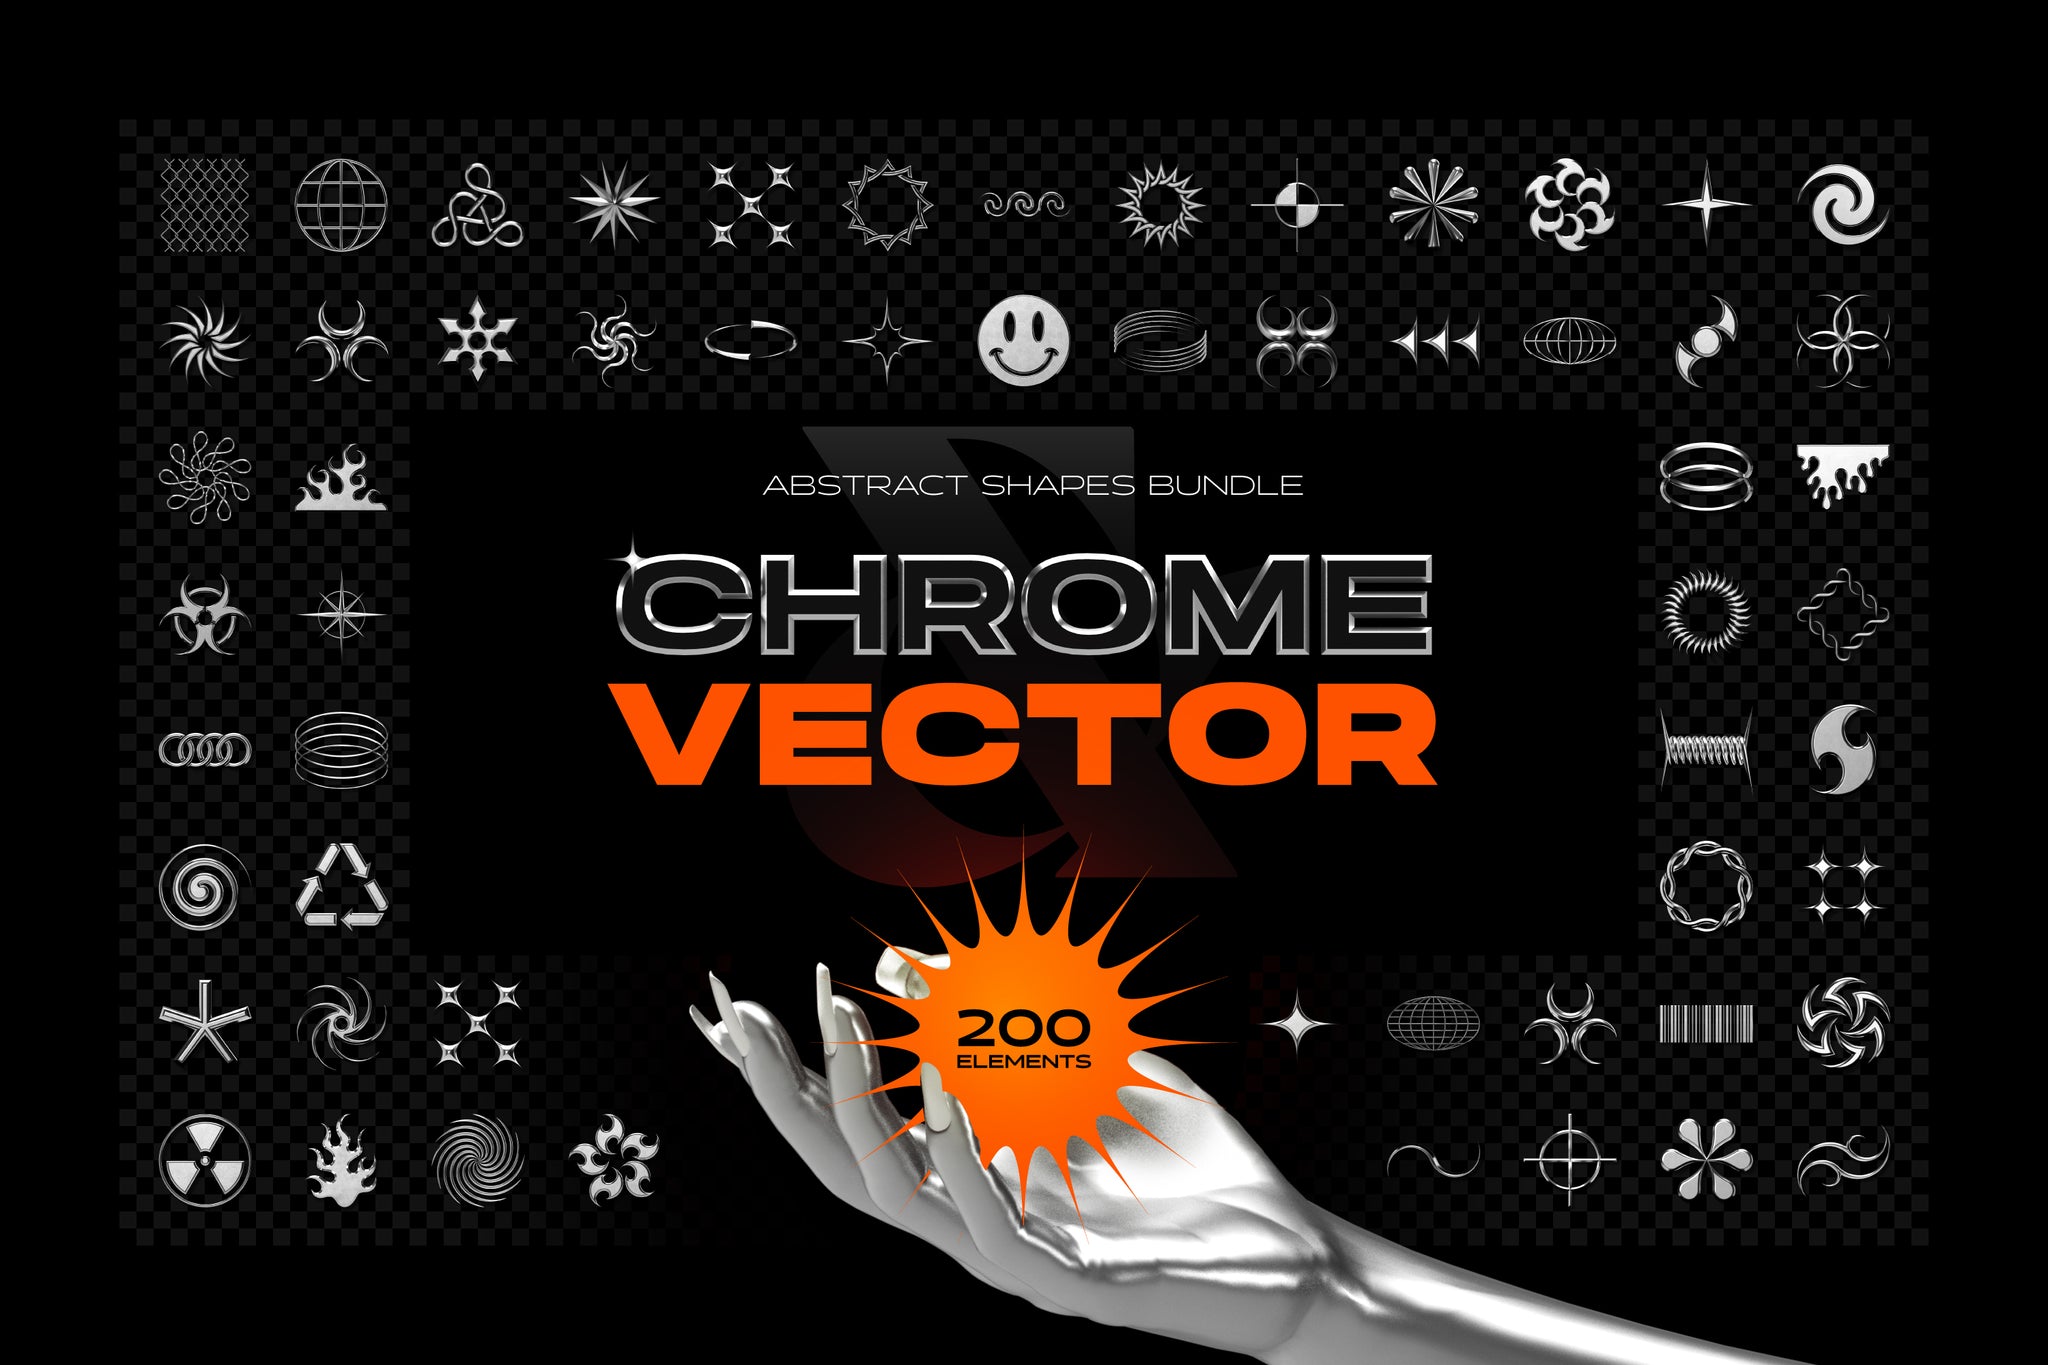 Chrome & Vector Abstract Shapes Bundle - 200 Unique Elements